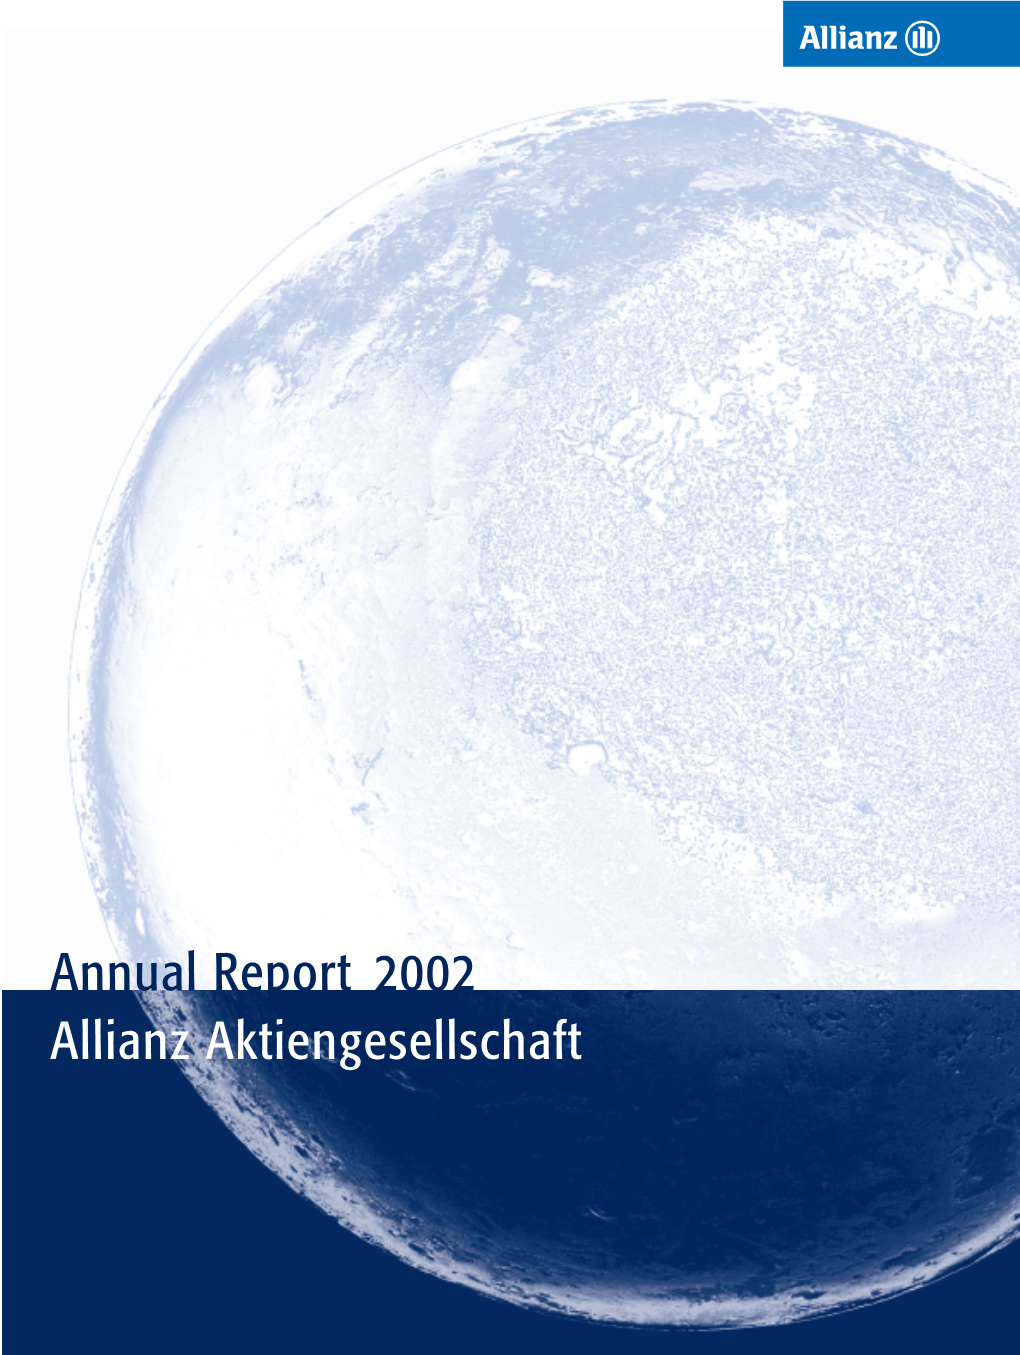 Annual Report 2002 Allianz Aktiengesellschaft Allianz Aktiengesellschaft 2002 Annual Report at a Glance